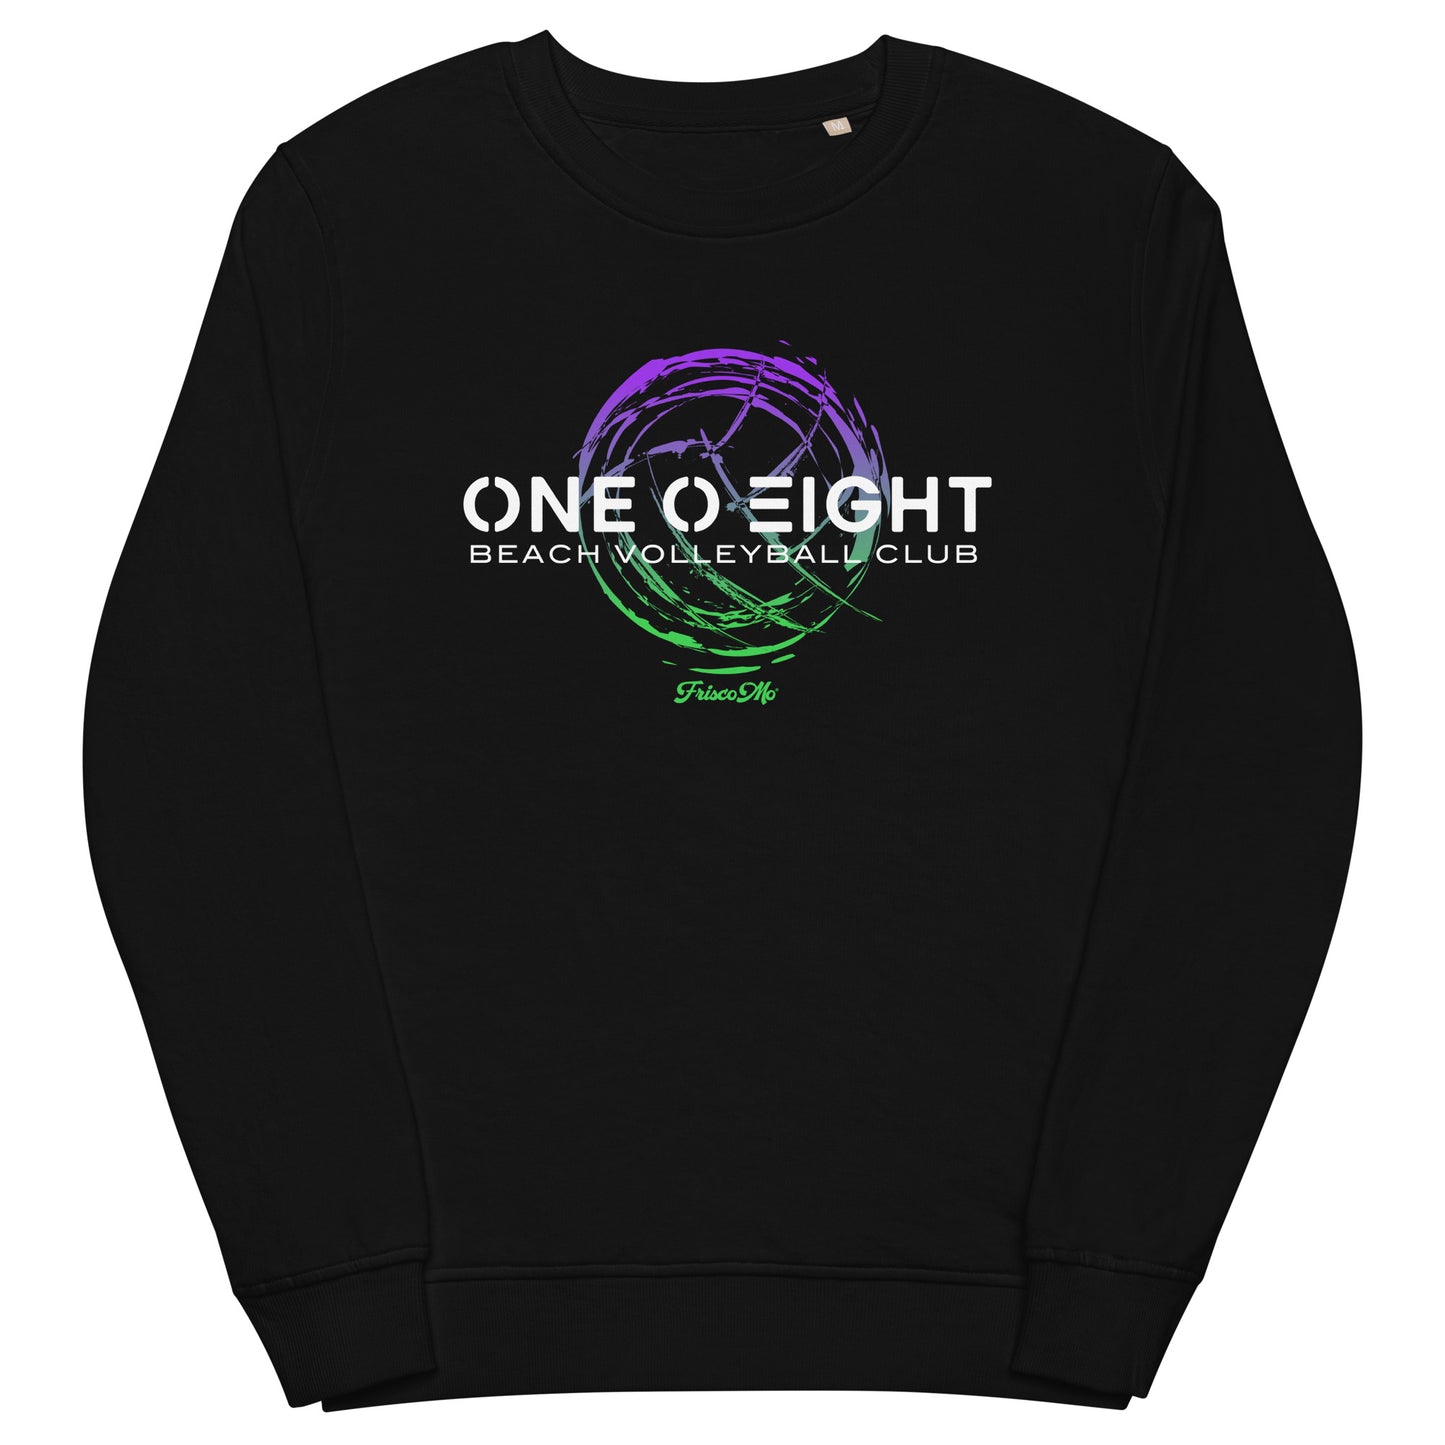 One O Eight Organic Crew